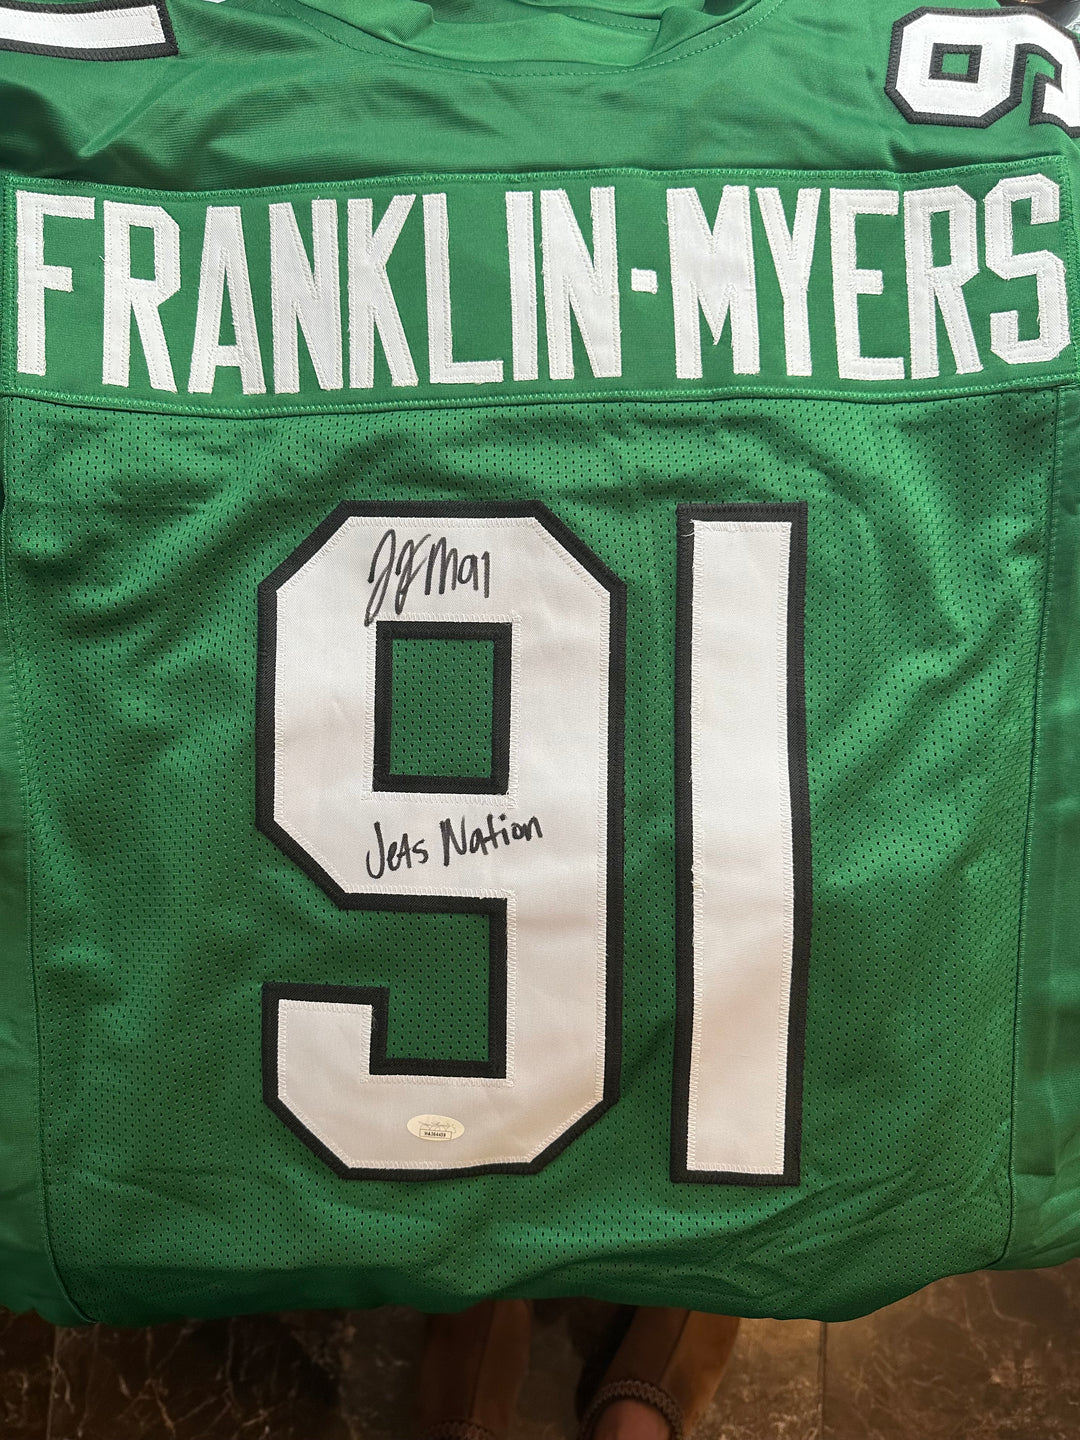 John Franklin-Myers signed jersey